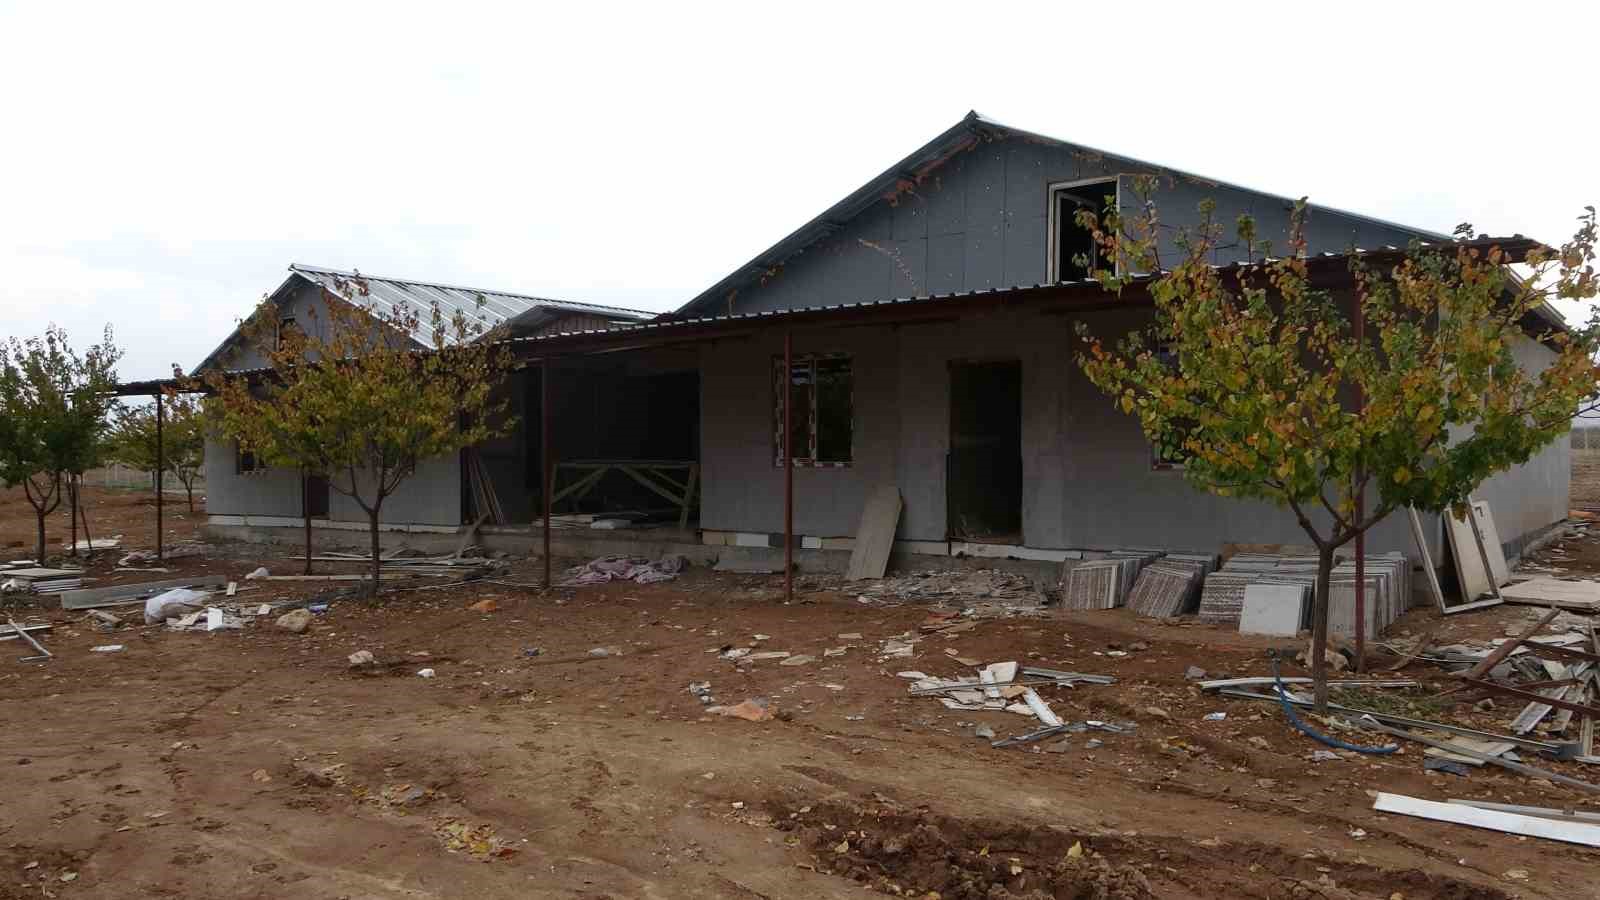 Deprem bölgesi Malatya’da tek katlı evlere ilgi arttı